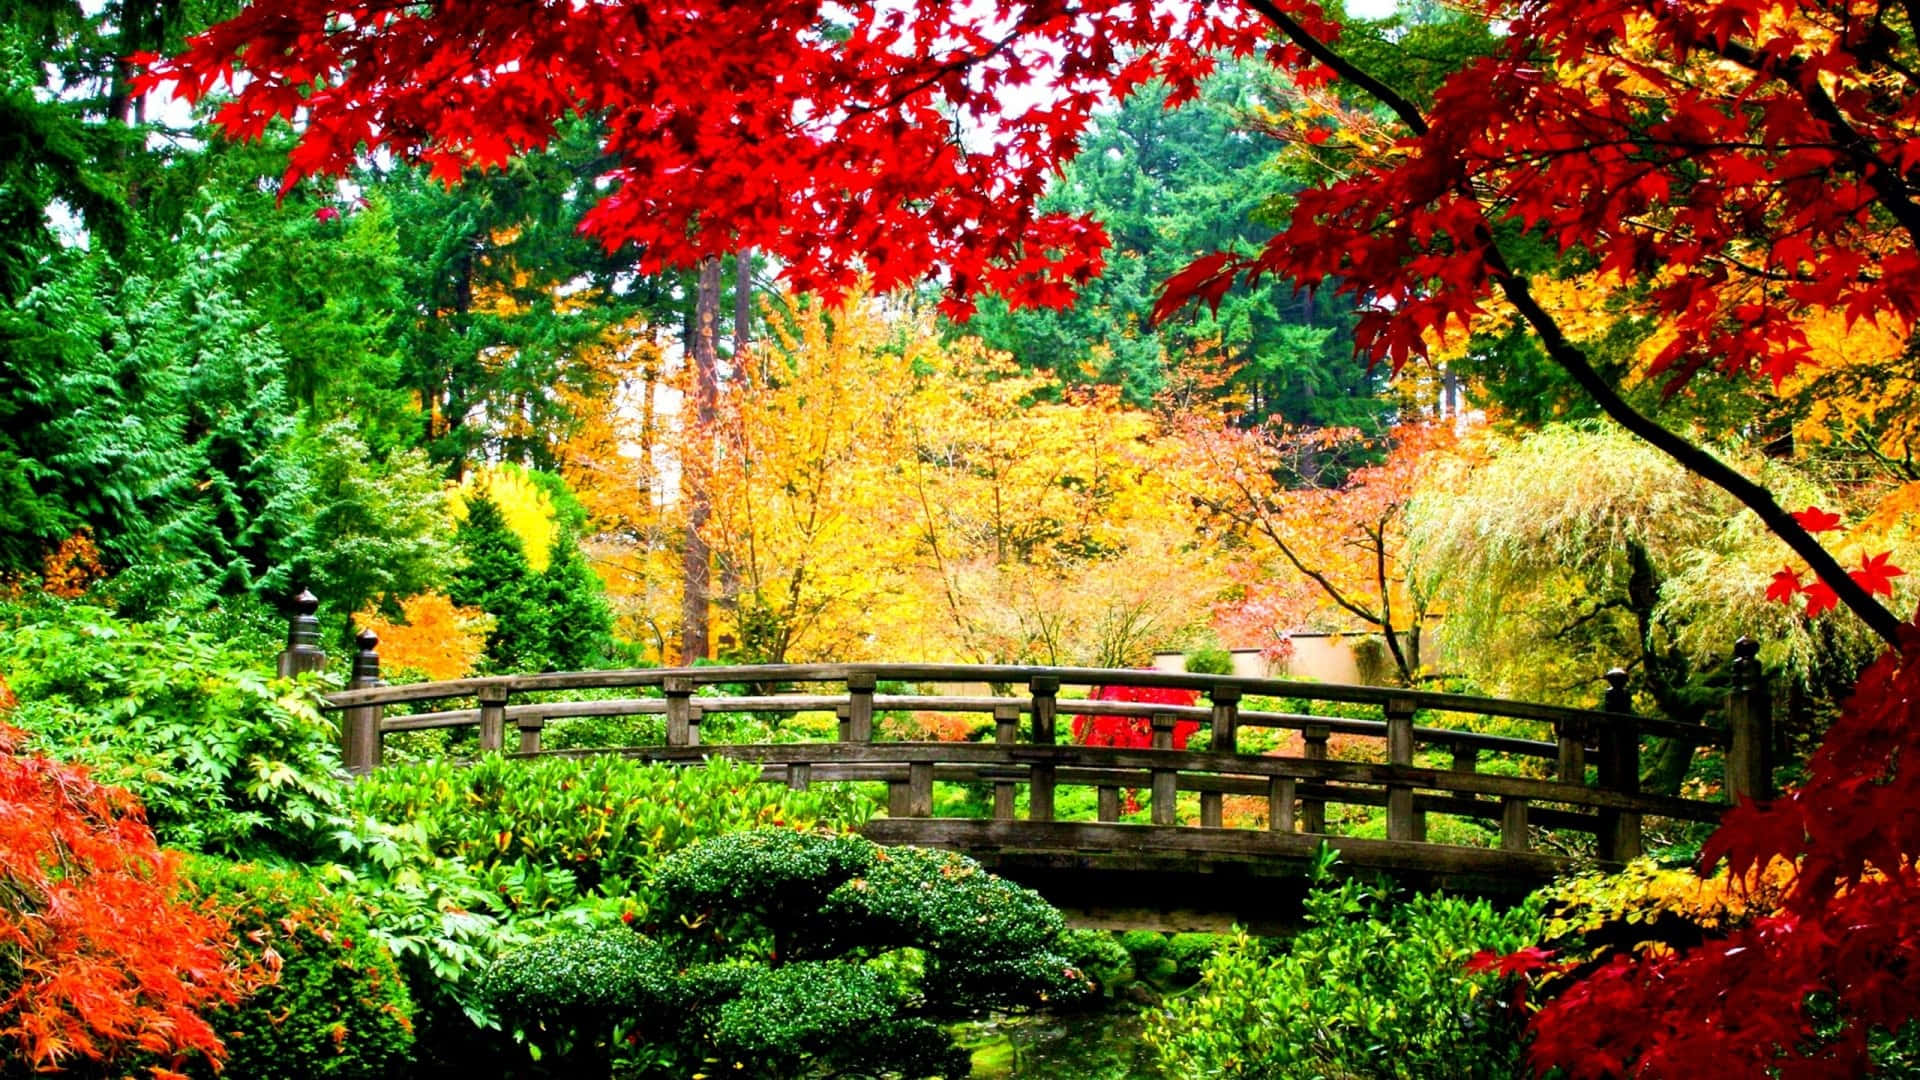 Dertraditionelle Japanische Baustil Eines Wunderschönen Shinto-schreins, Der Frieden Und Ruhe Ausstrahlt.